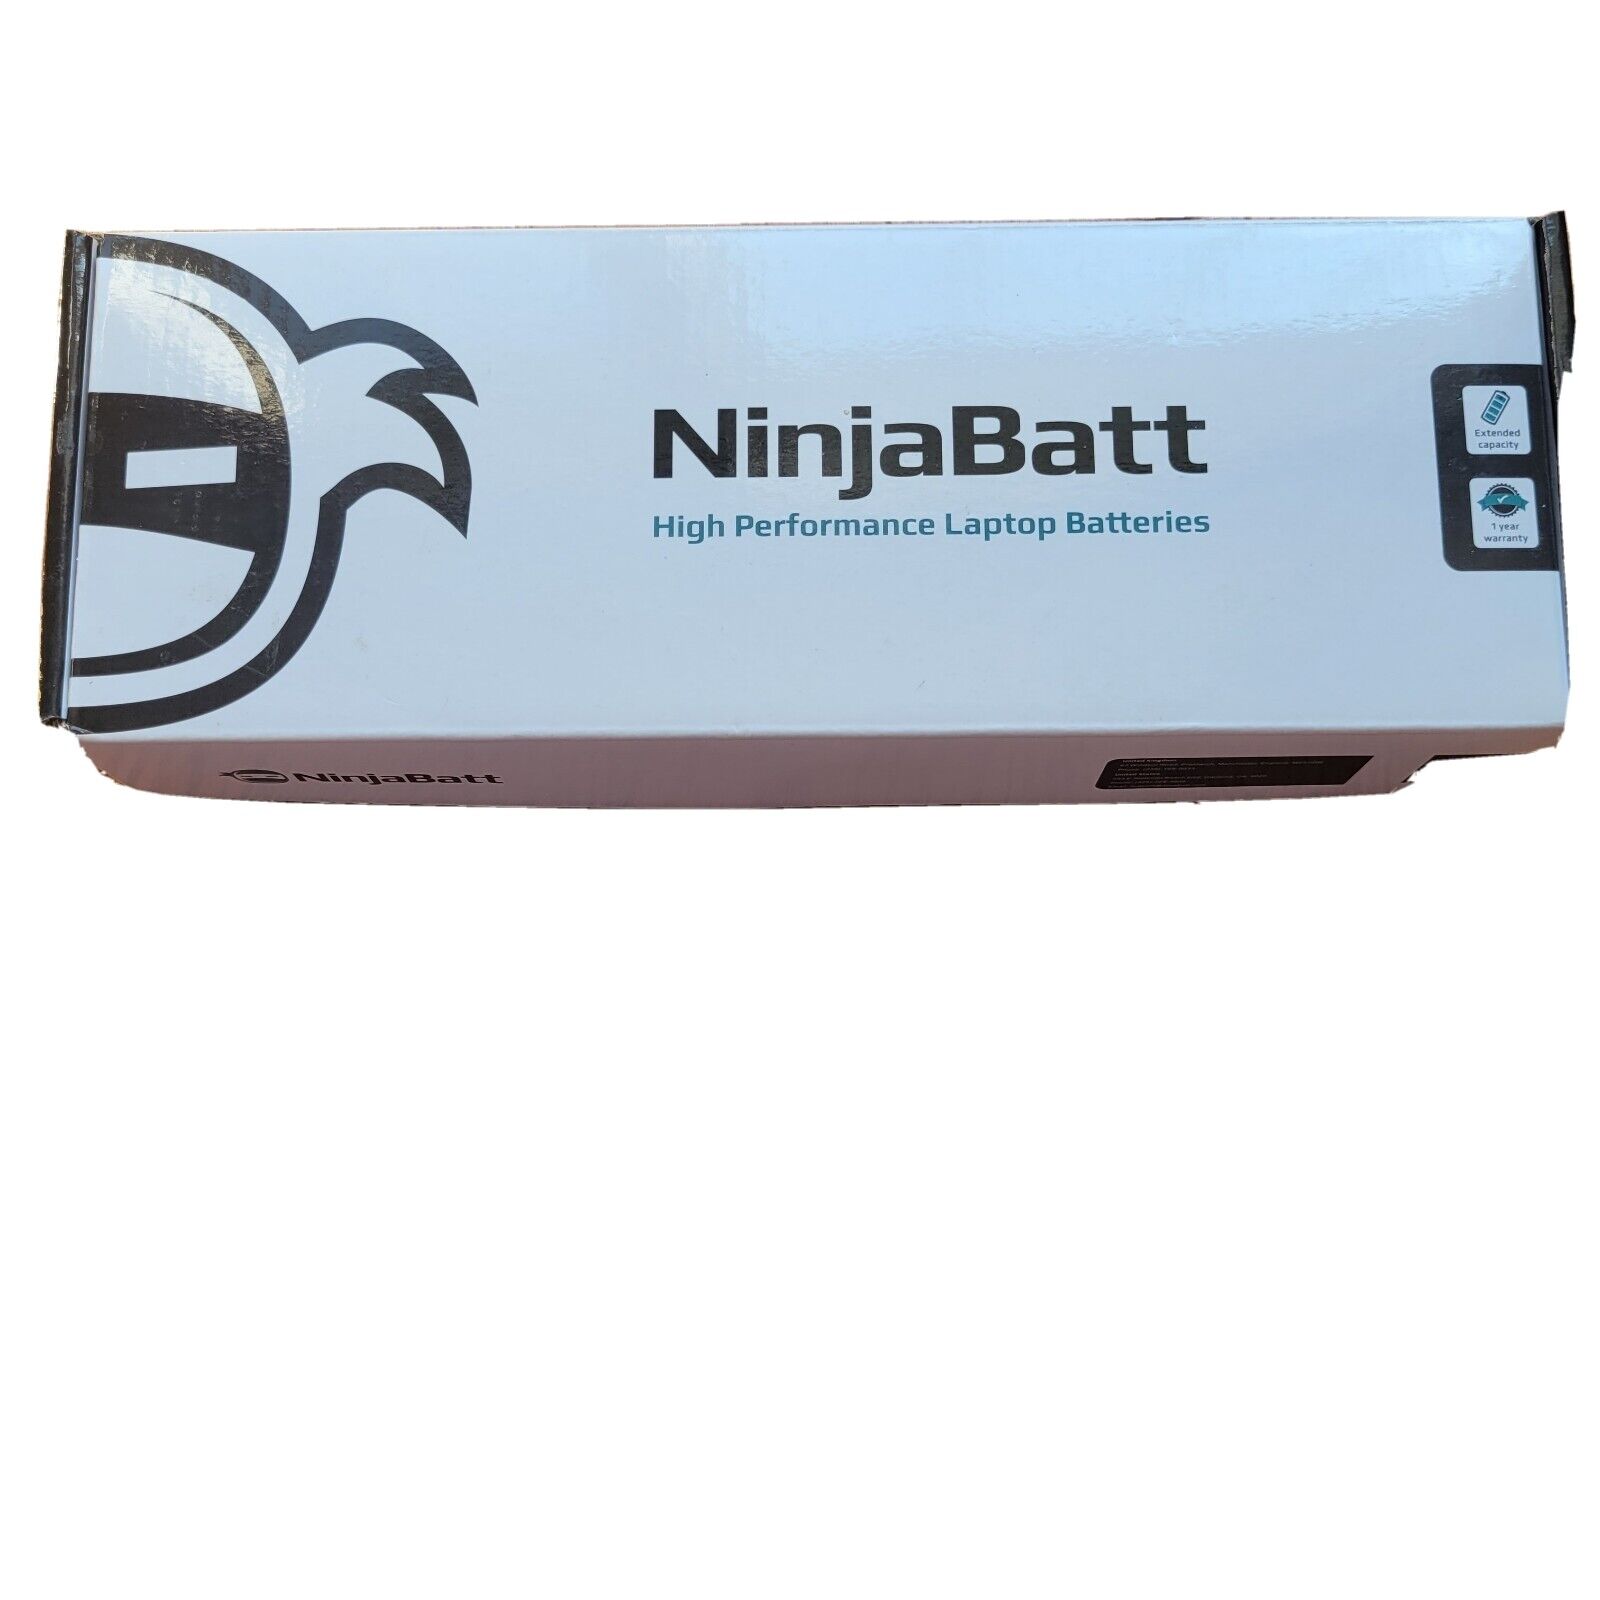 NinjaBatt Laptop Batteries Replacement For Hp 493976-001 Hewlett-Packard